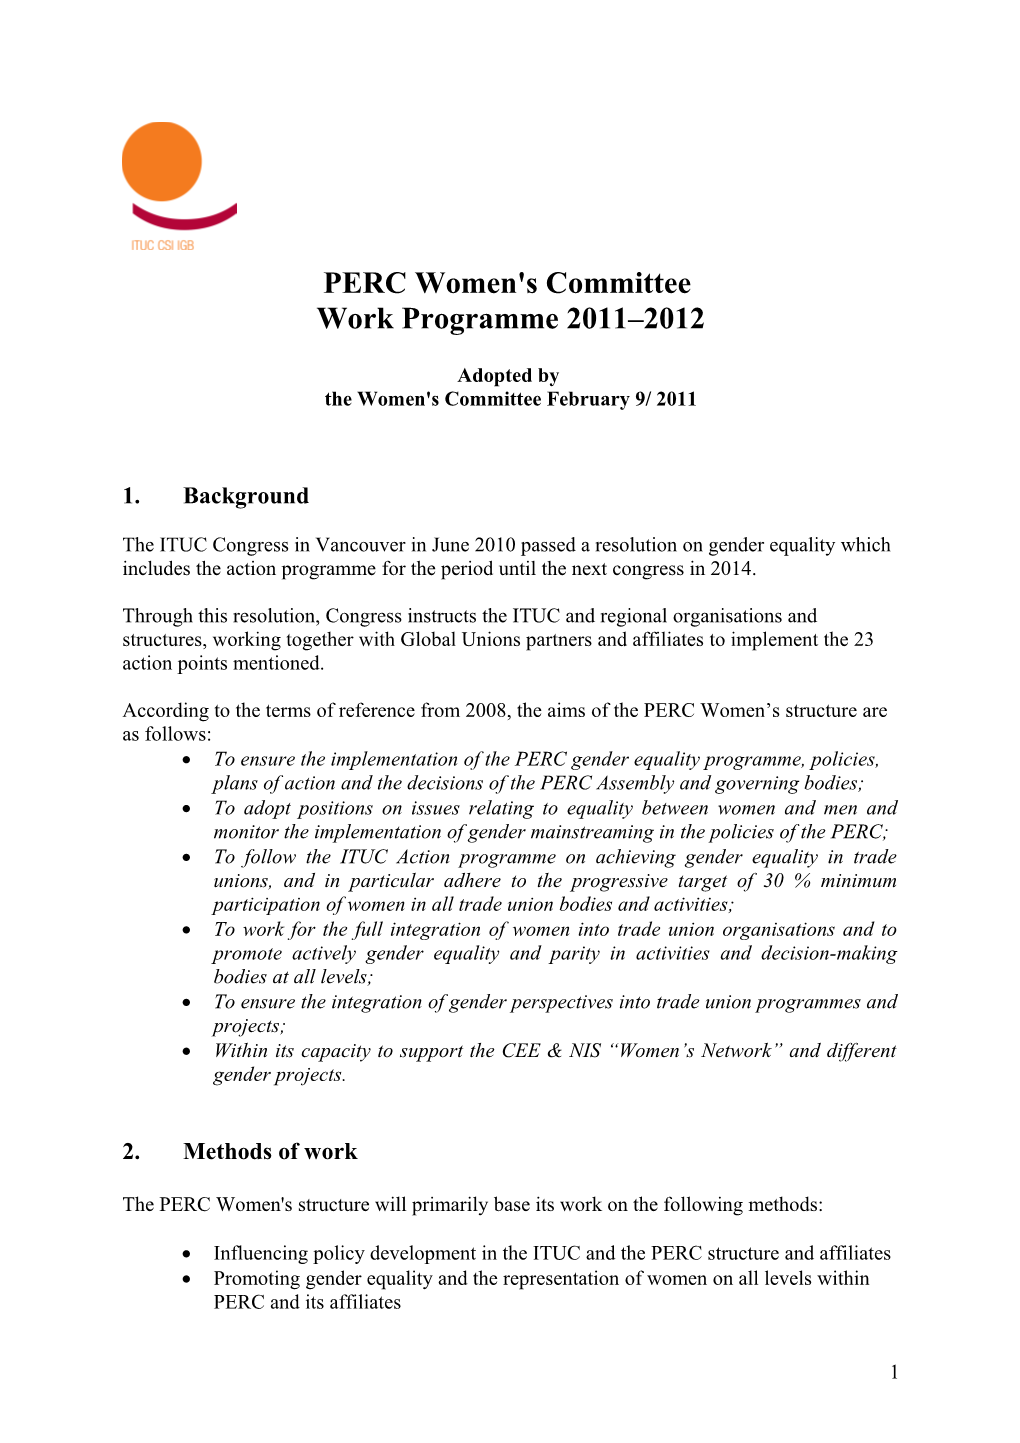 PERC WC Work Programme 2011 2012